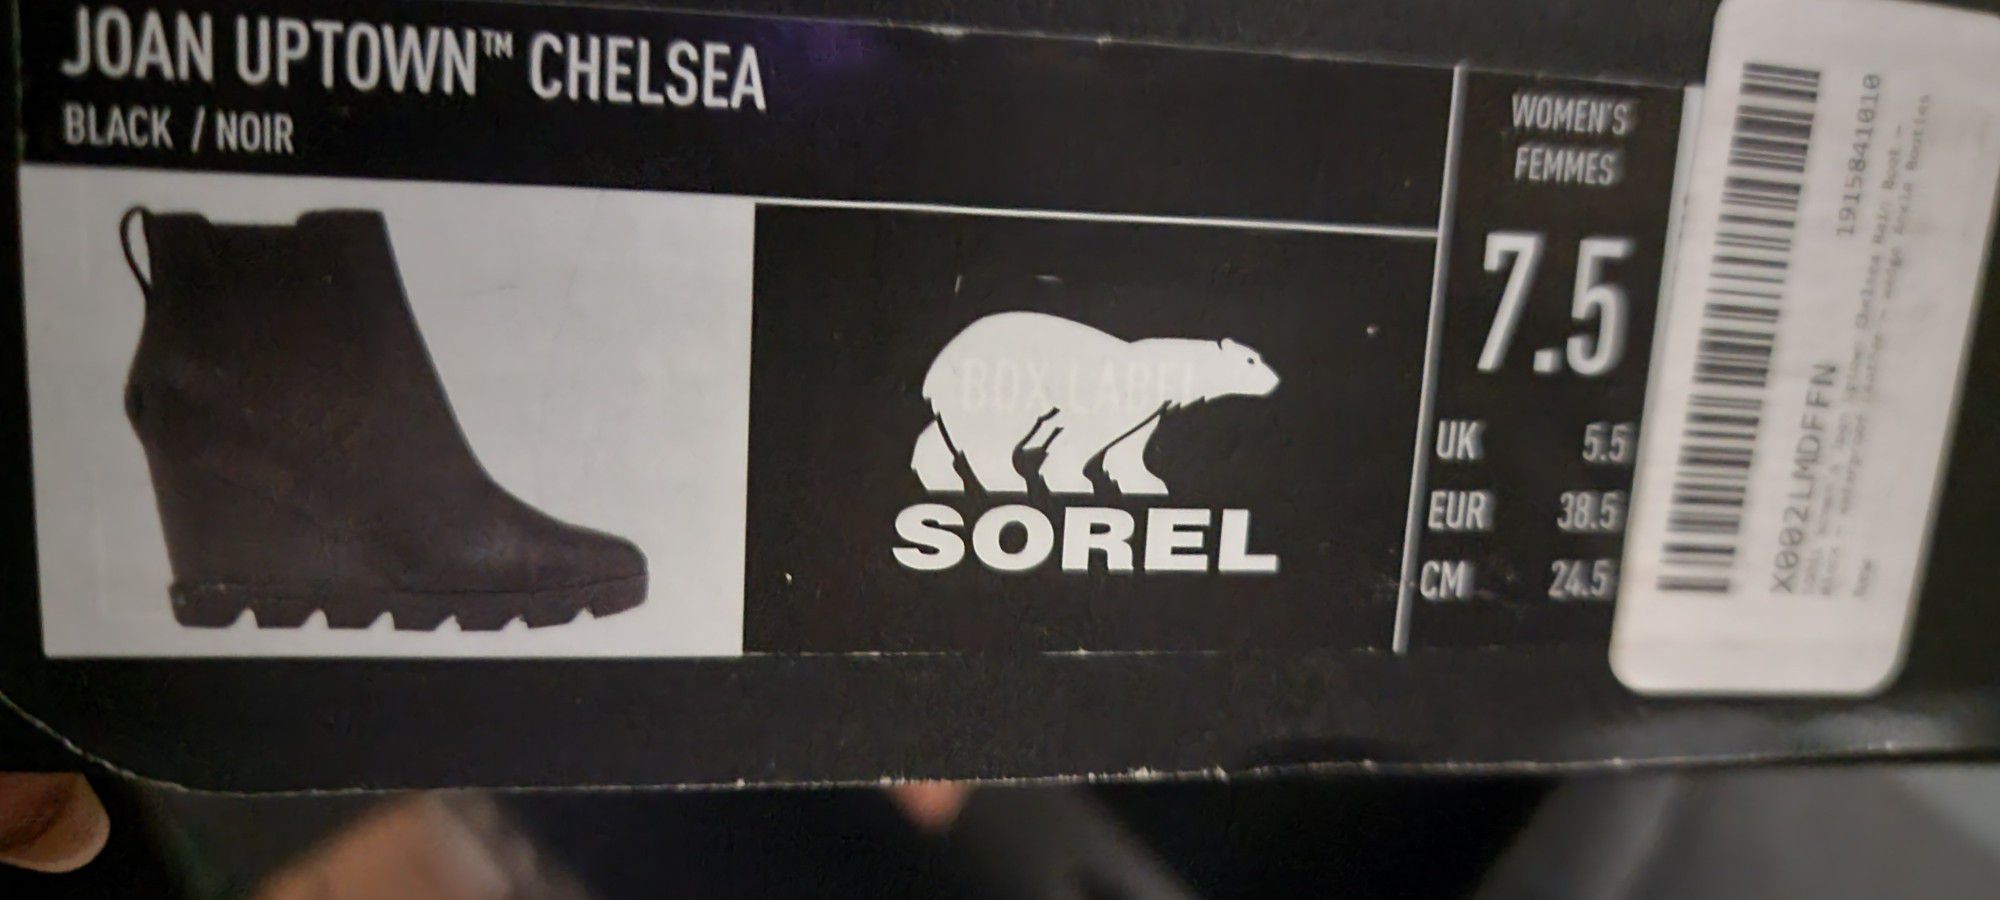 Sorel BOOTIES Size 7.5